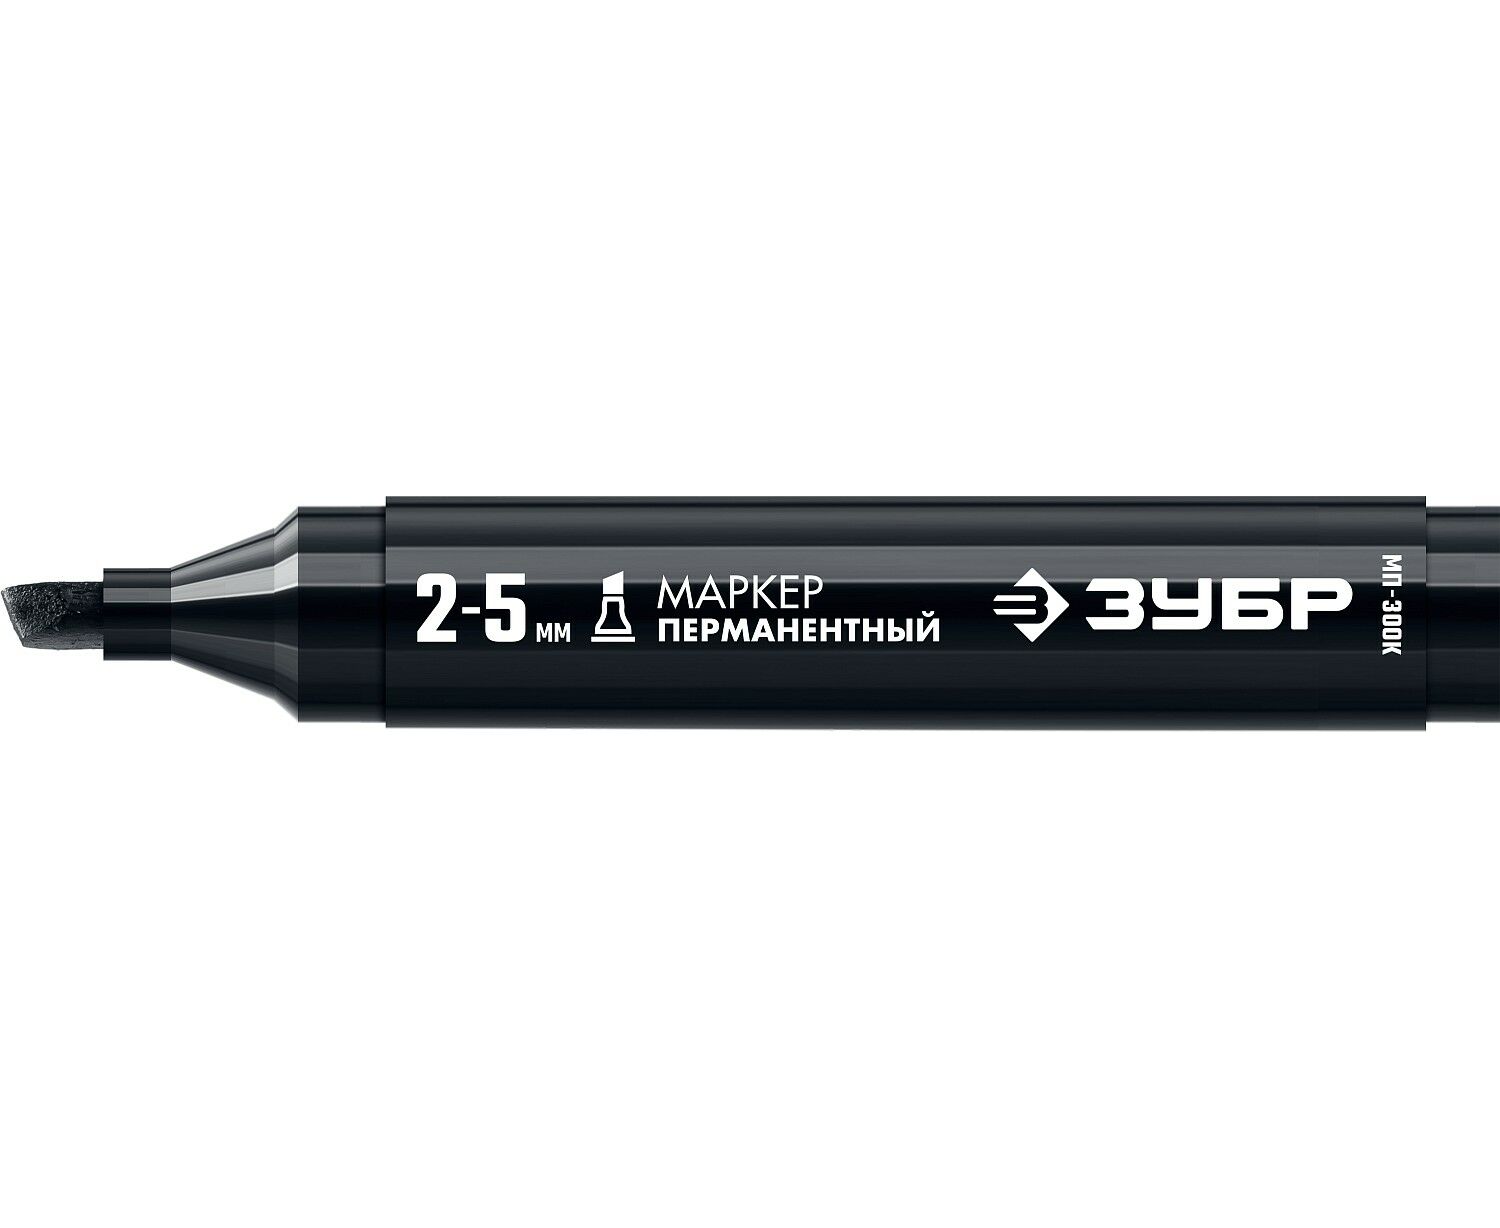 Маркер строительный ЗУБР МП-300К черный, 2-5 мм, клиновидный, перманентный строительный маркер перманентный многоразового использования белый pica visor 990 52